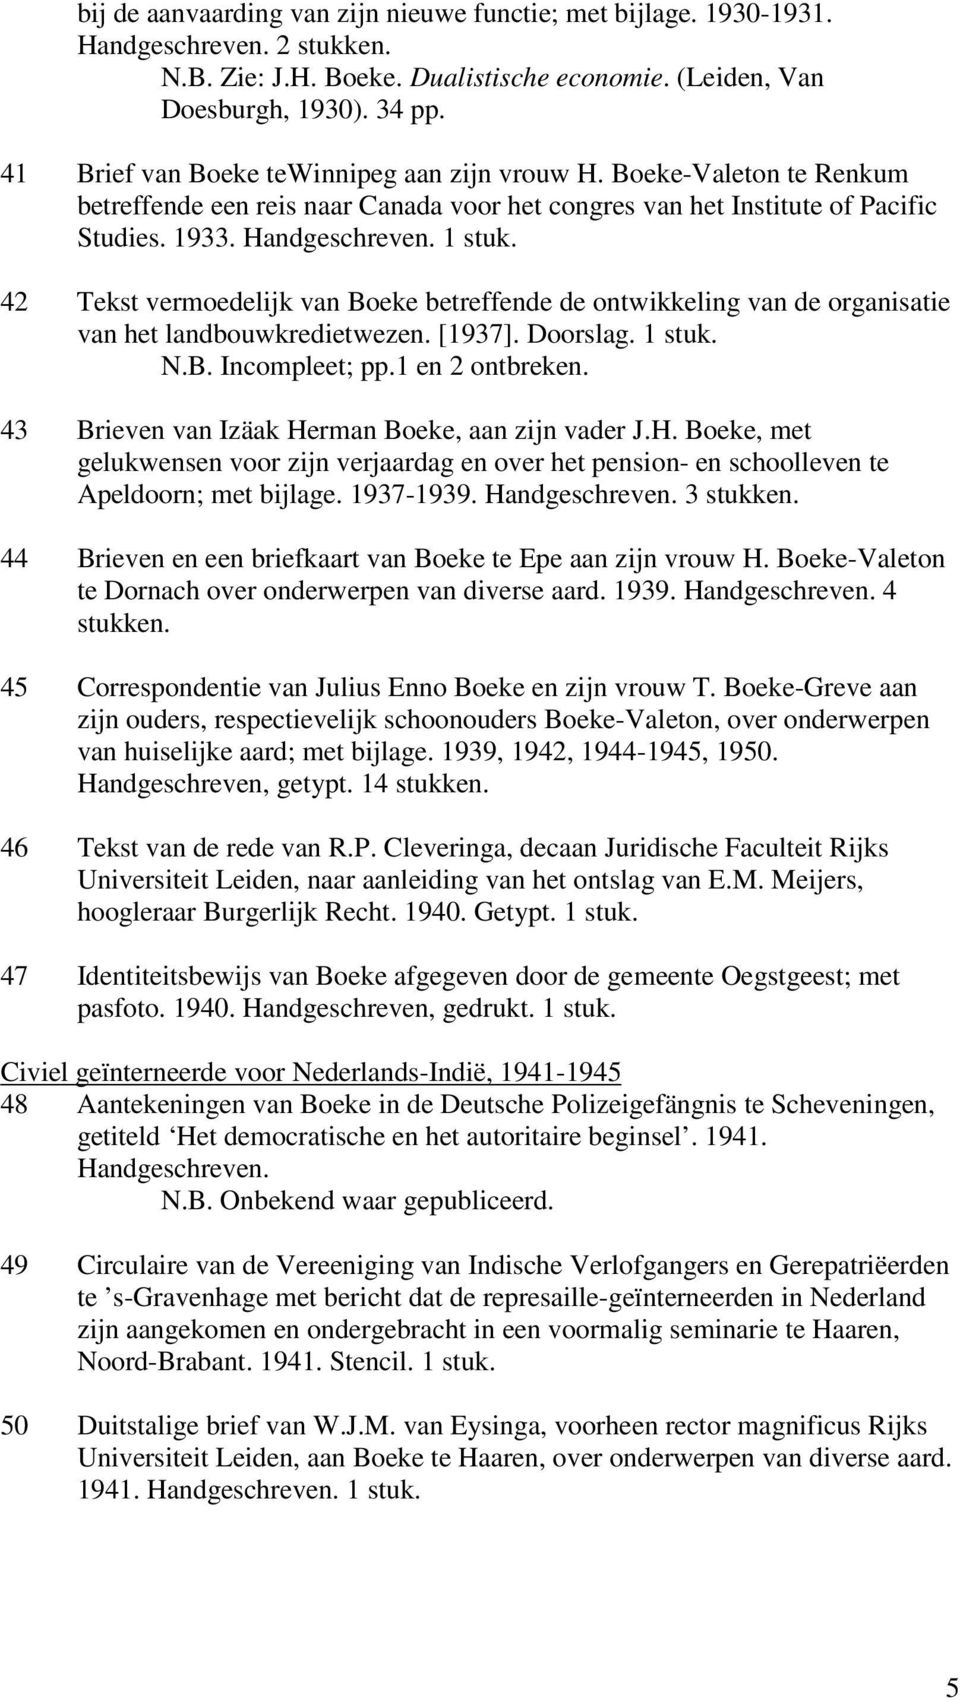 42 Tekst vermoedelijk van Boeke betreffende de ontwikkeling van de organisatie van het landbouwkredietwezen. [1937]. Doorslag. 1 stuk. N.B. Incompleet; pp.1 en 2 ontbreken.